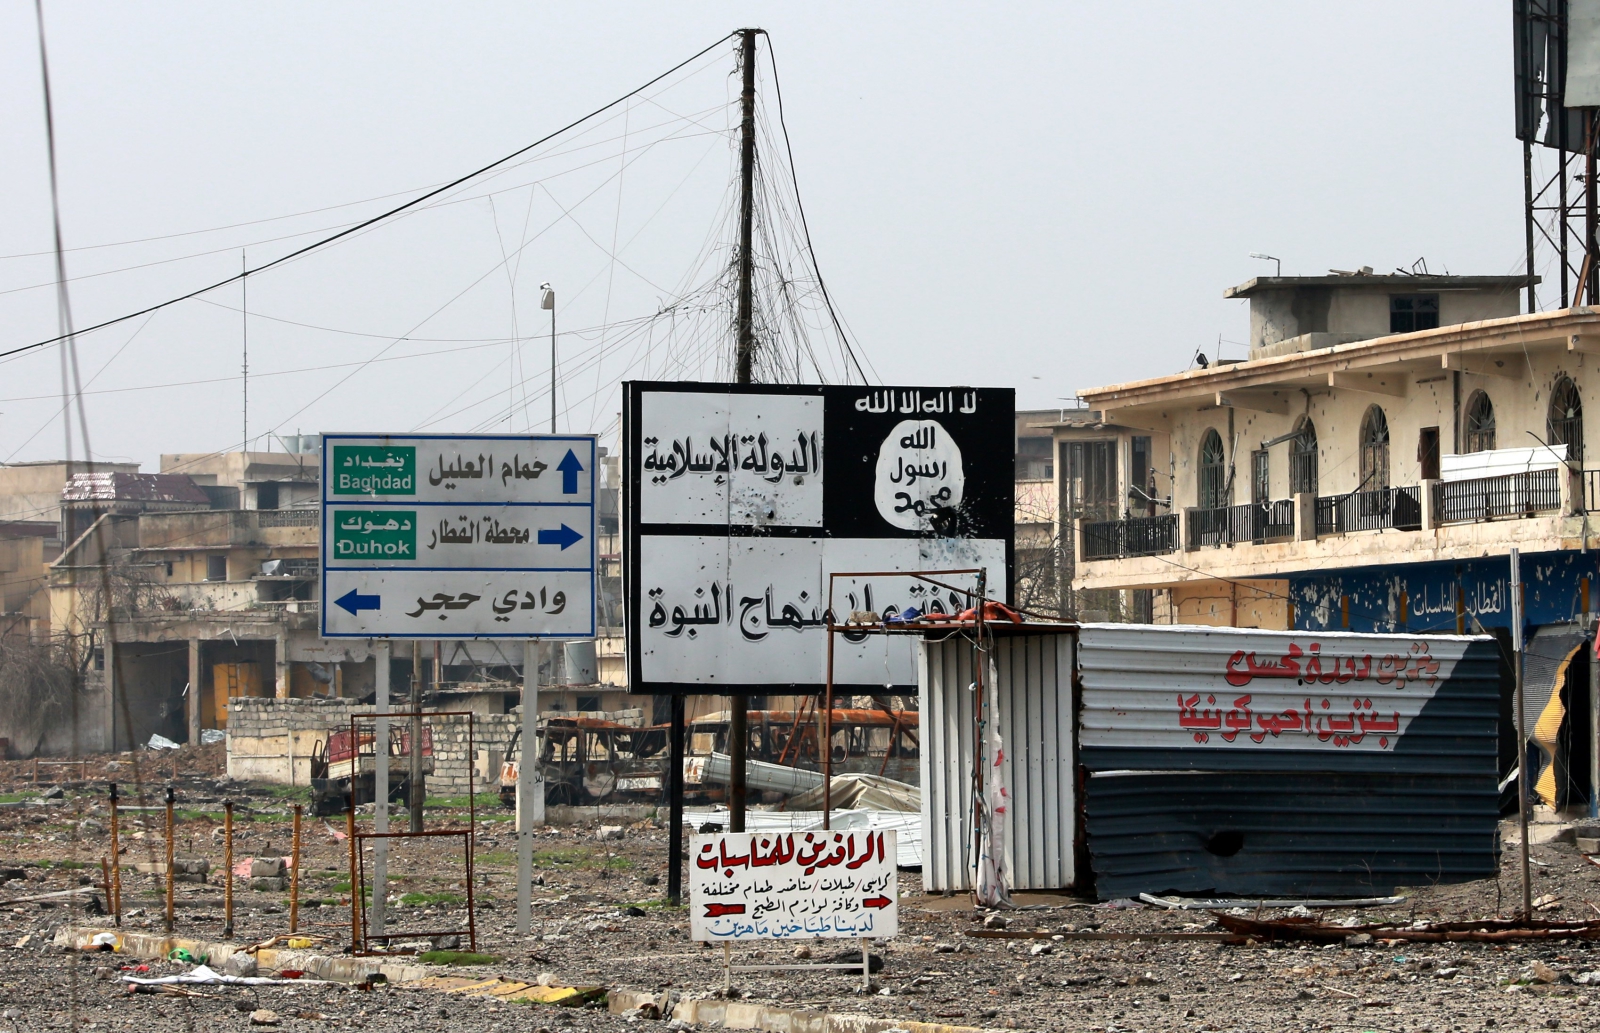 Tablica z hasłami Państwa Islamskiego w Mosulu, Irak.